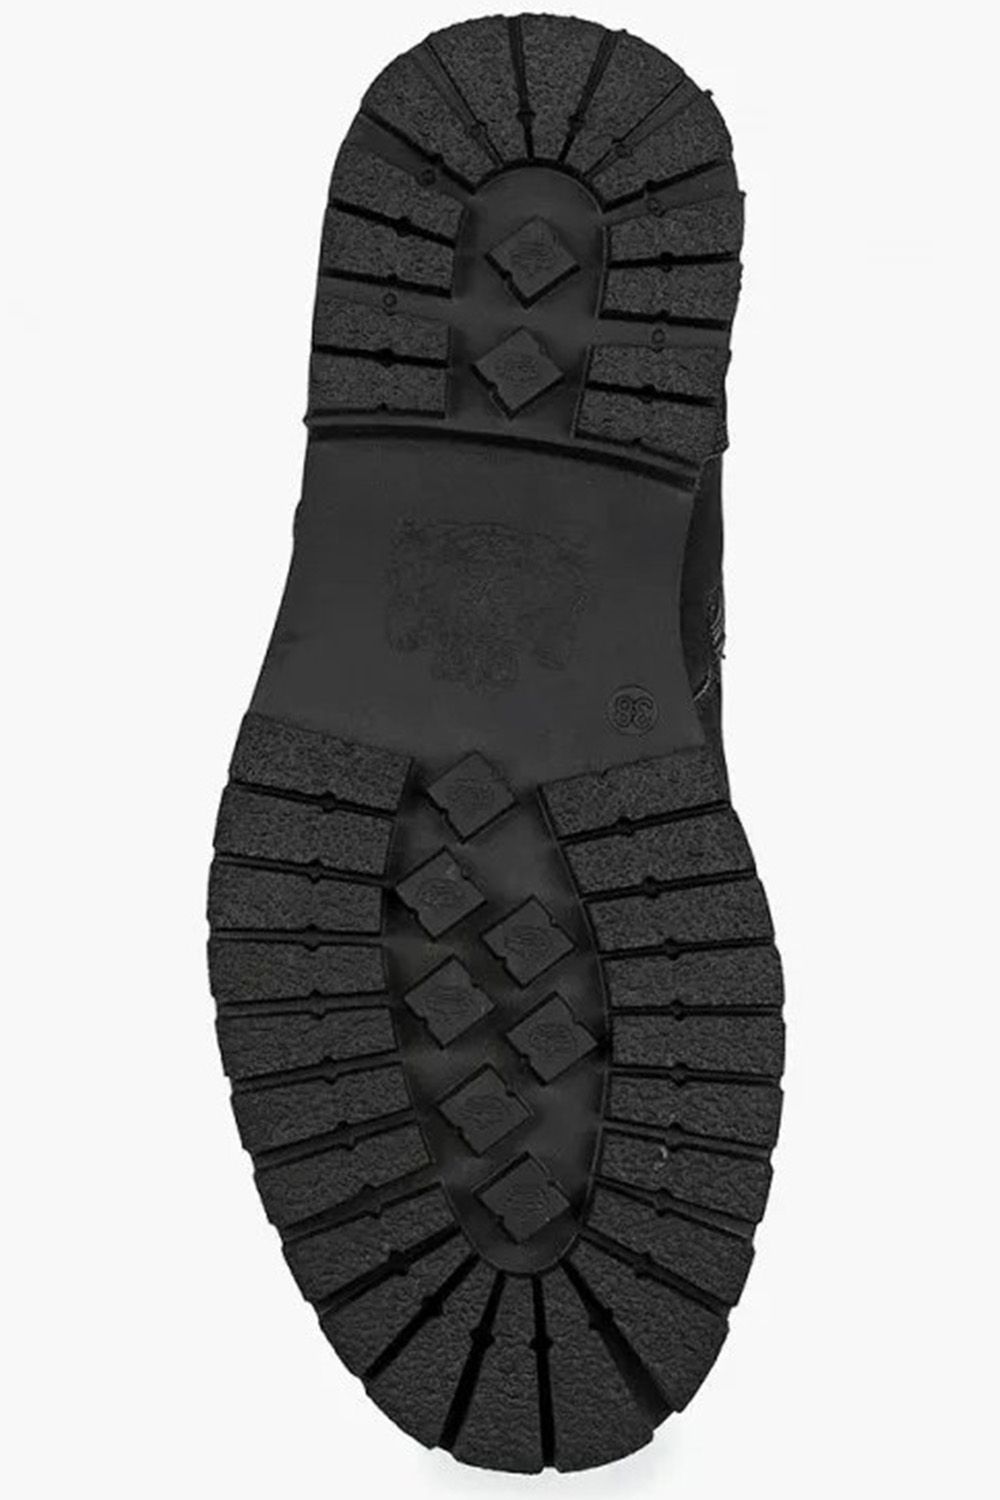 Ботинки Keddo, размер 40, цвет черный 588139/03-03 - фото 2